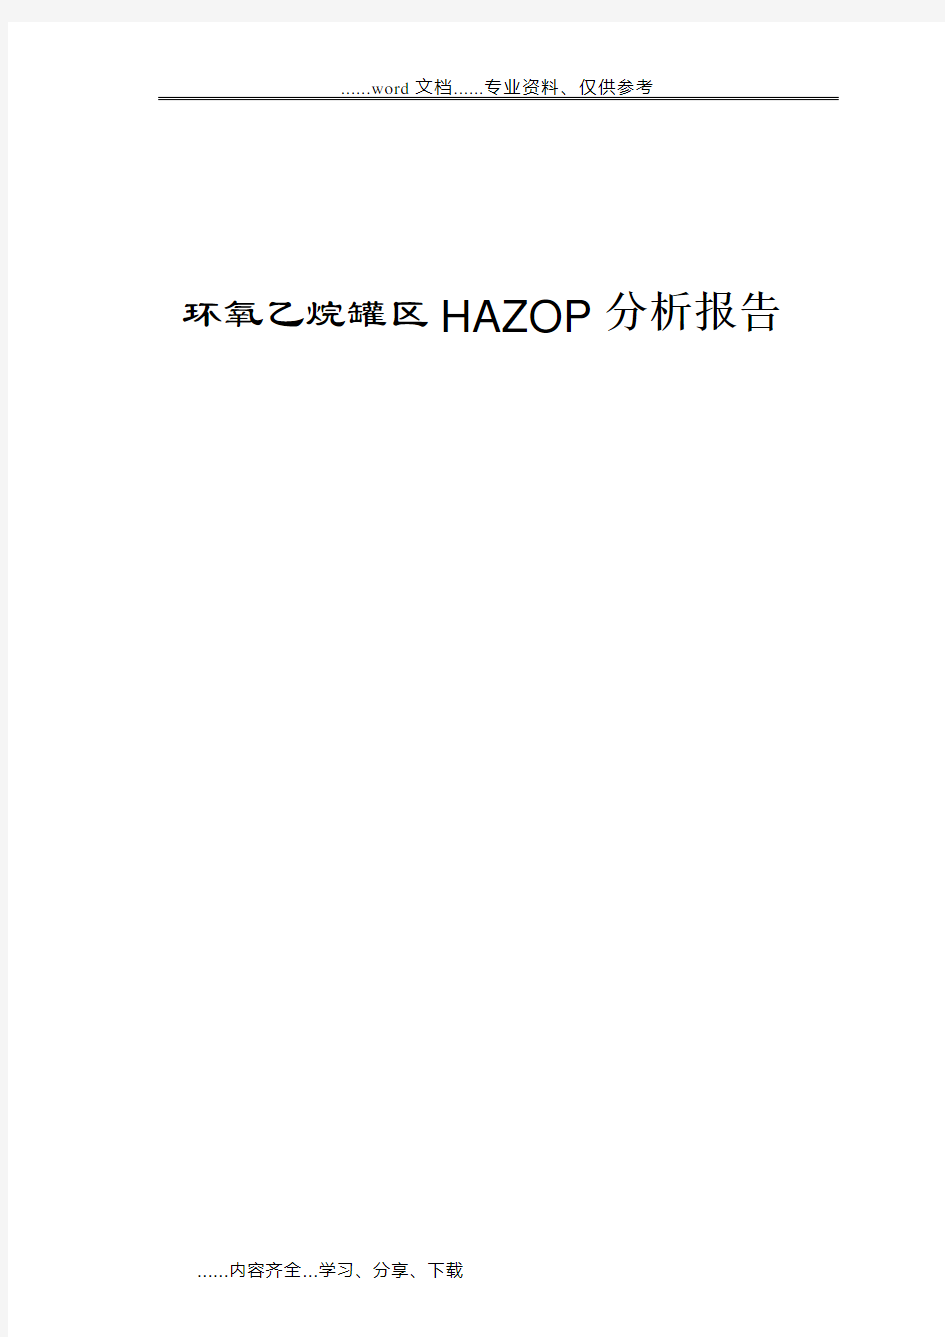 环氧乙烷罐区hazop分析报告